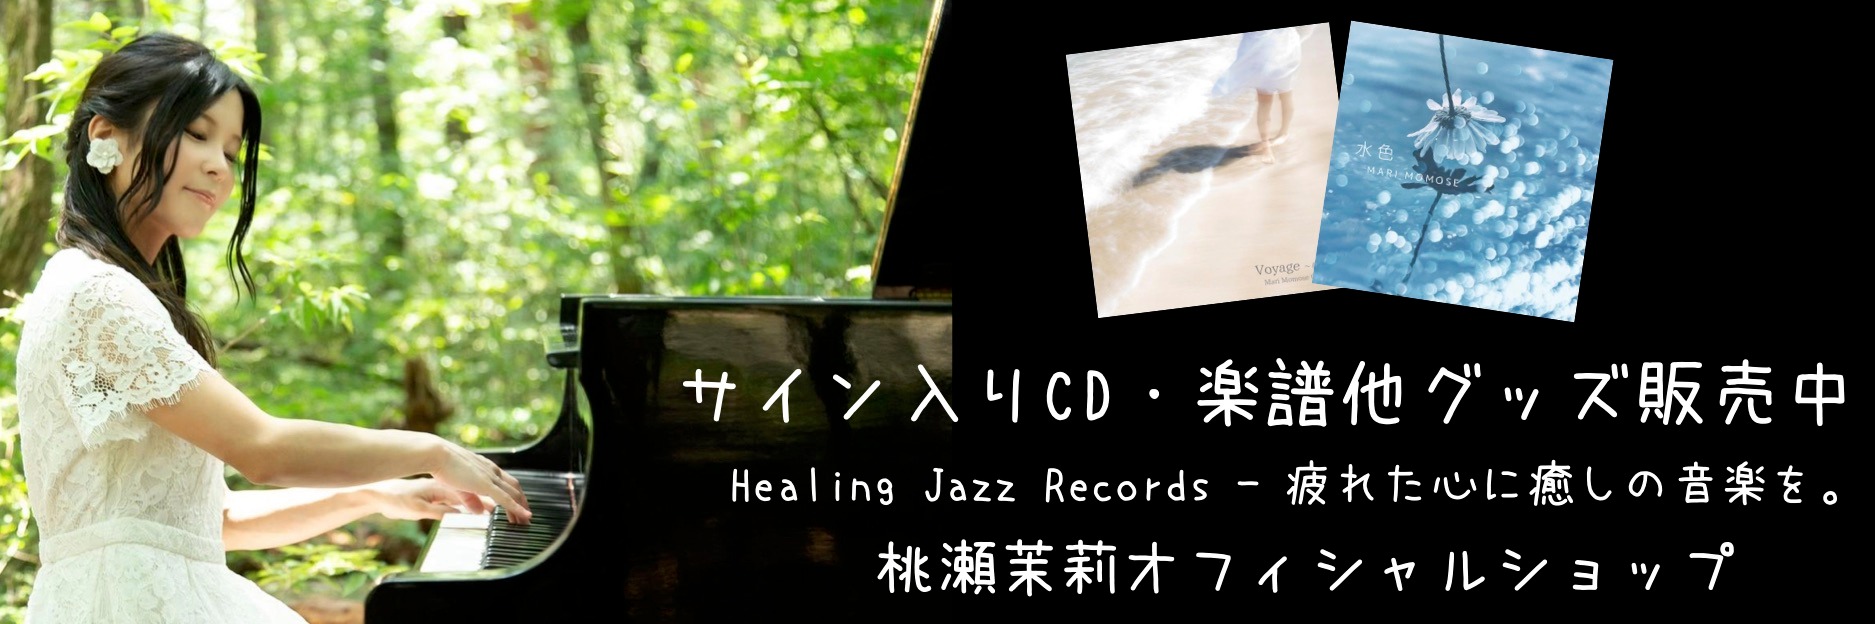 Healing Jazz Records - 疲れた心に癒しの音楽を。